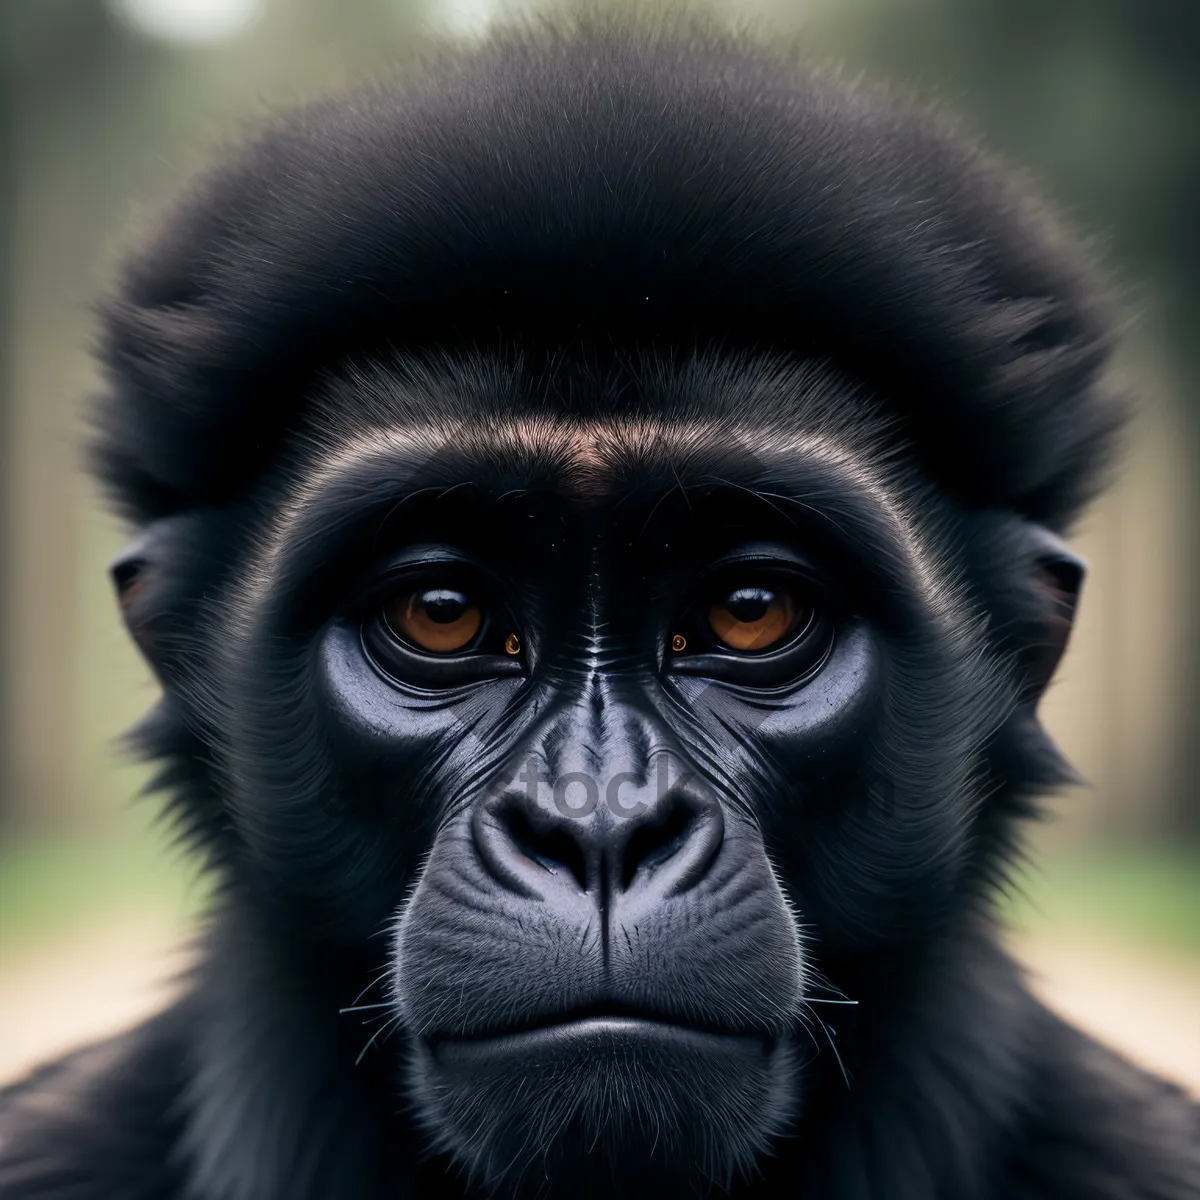 Picture of Primate Encounter: A Glimpse into the Wild